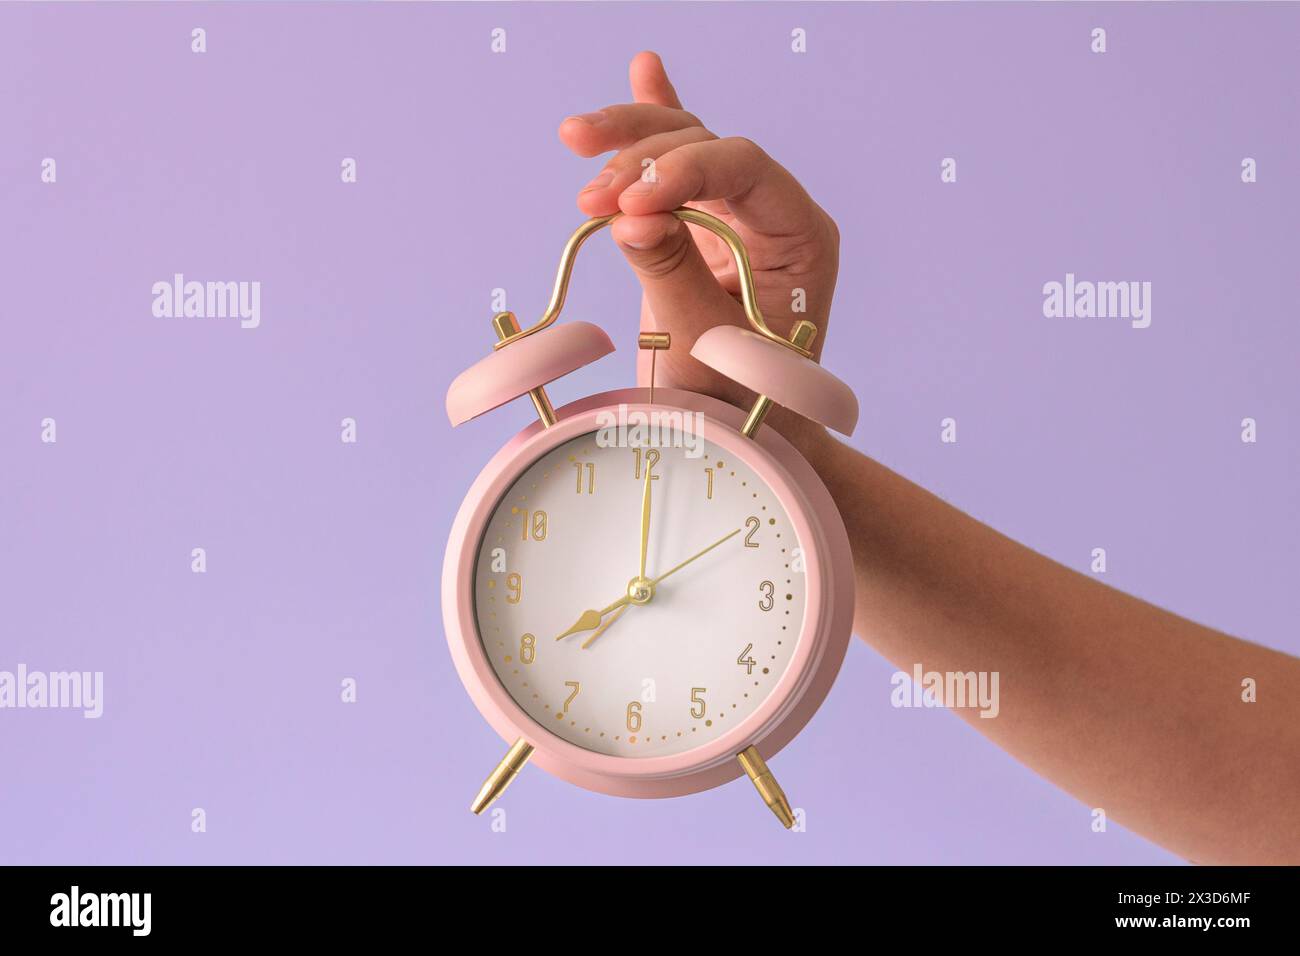 Sveglia in mano a un bambino. Otto ore, primo piano, sfondo rosa tenue Foto Stock